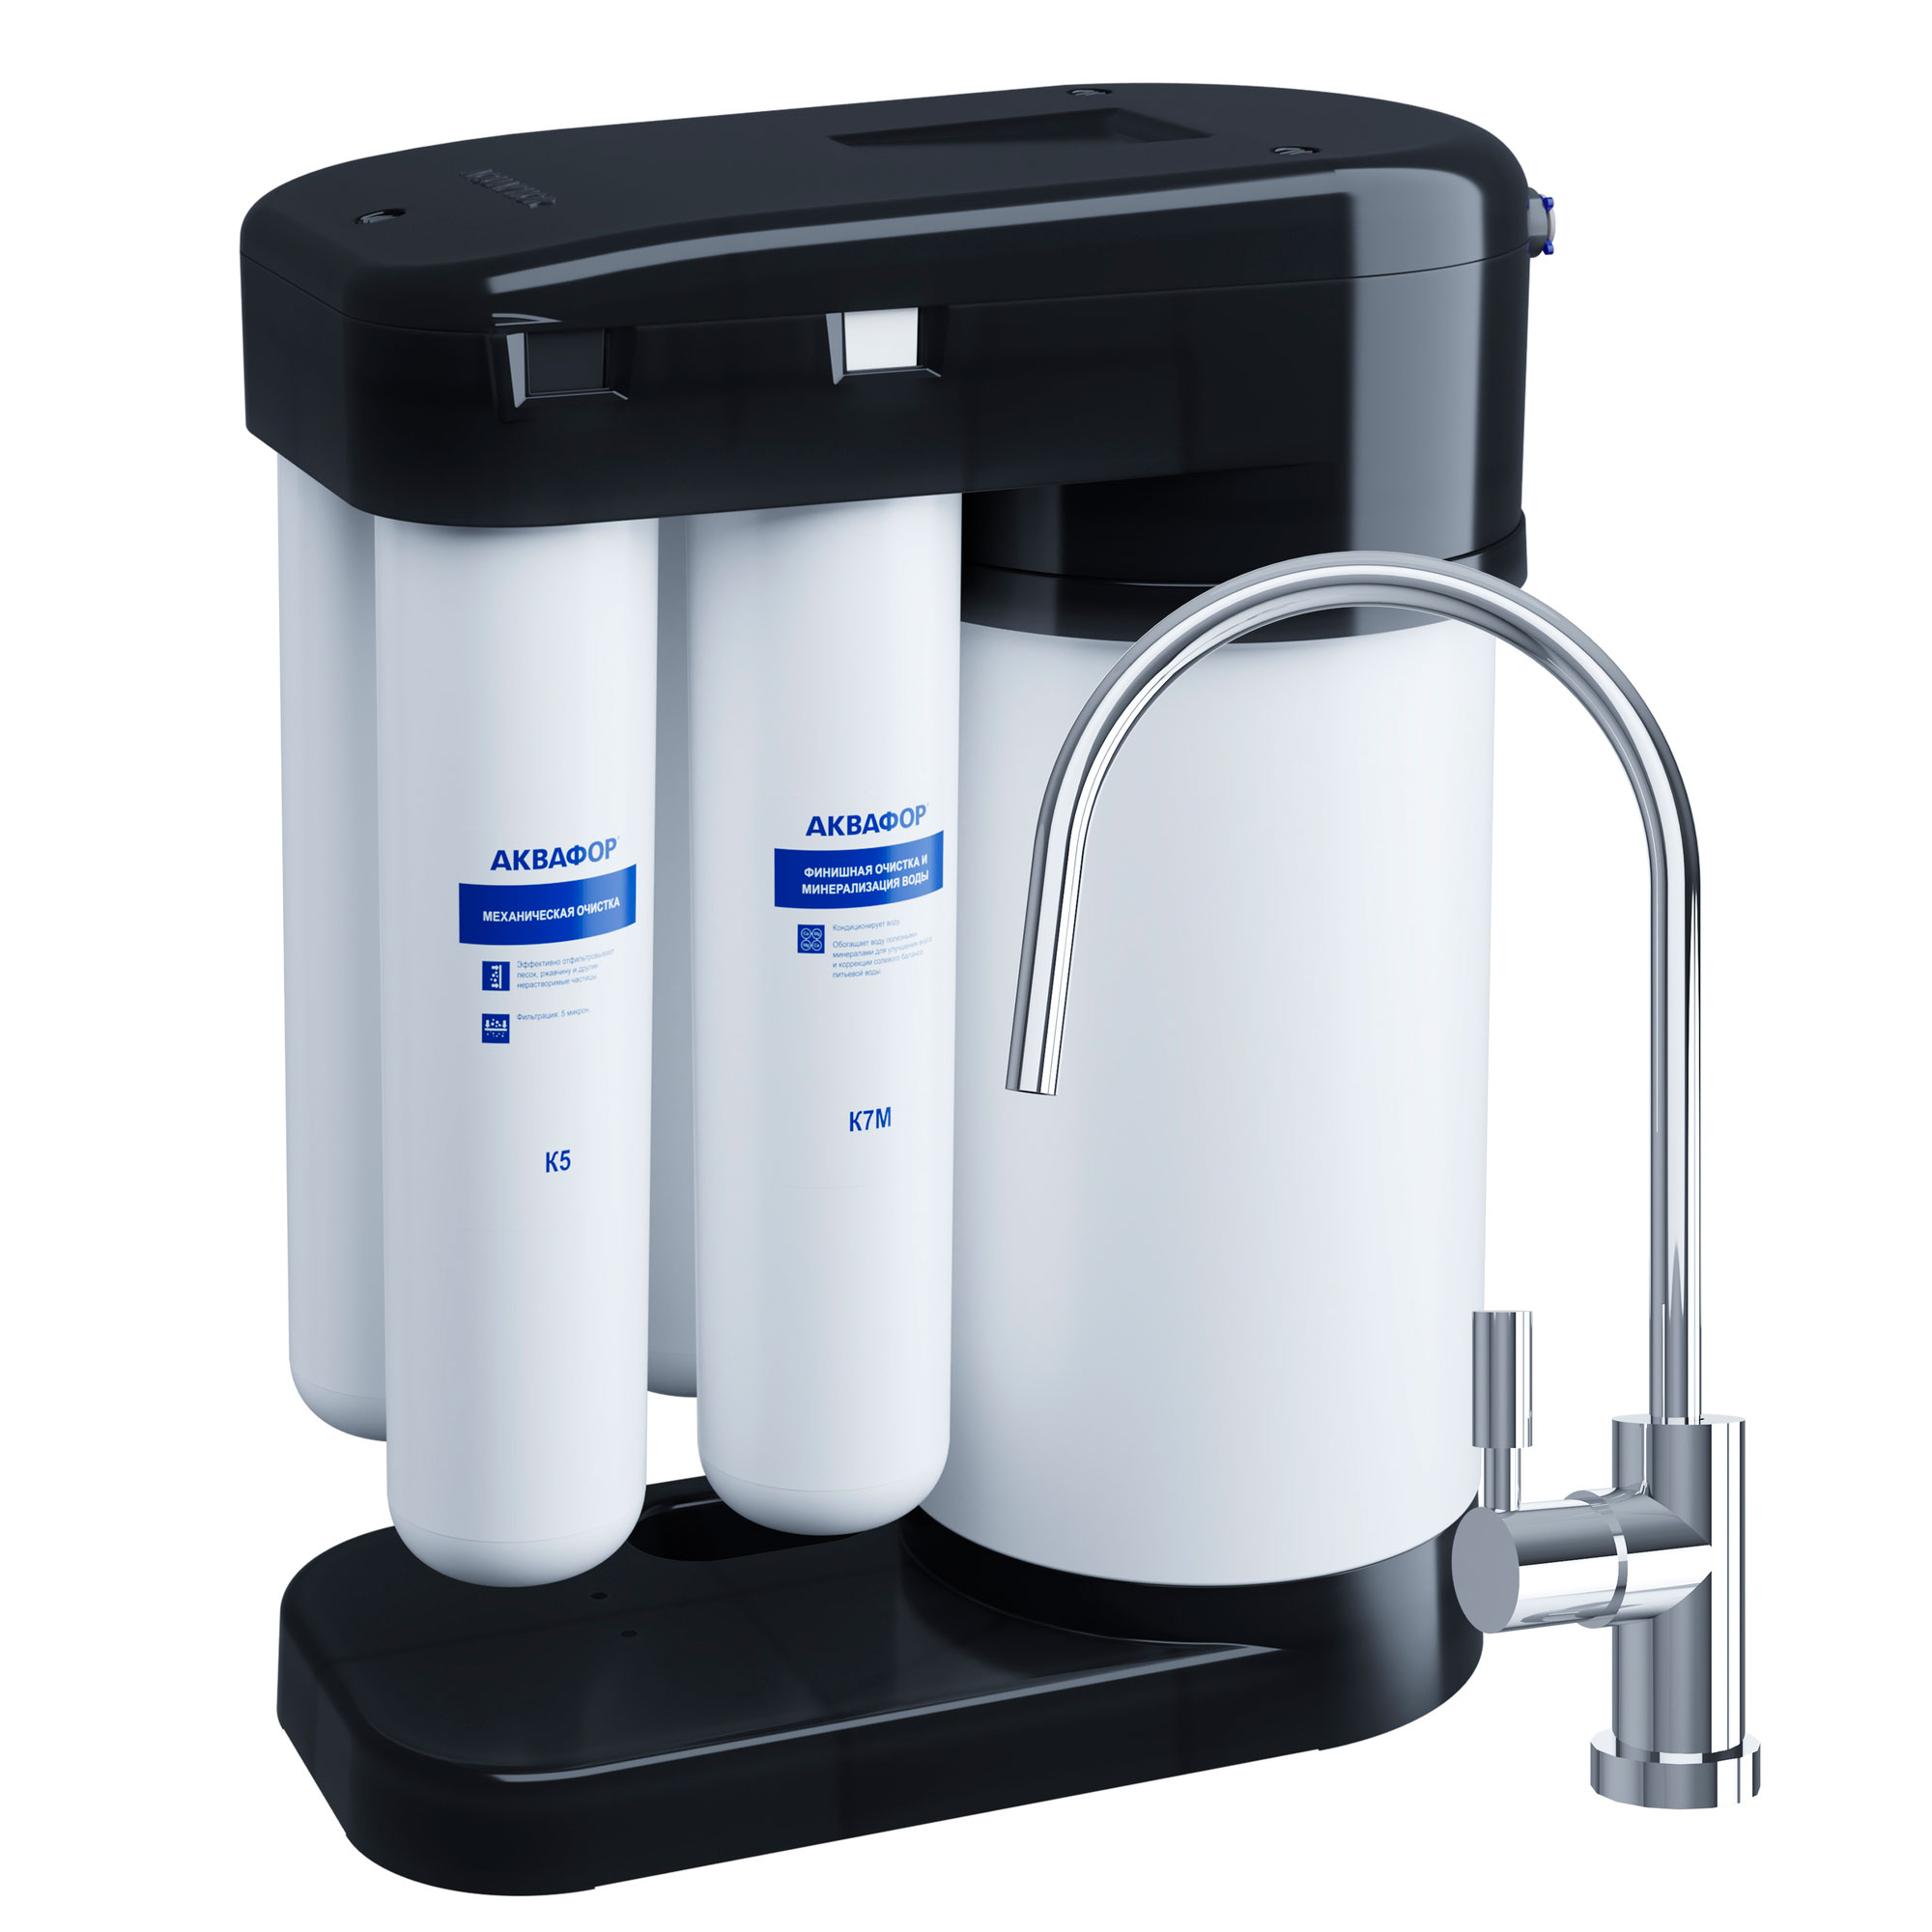 Фильтр для воды Aquaphor DWM-102S Black Edition